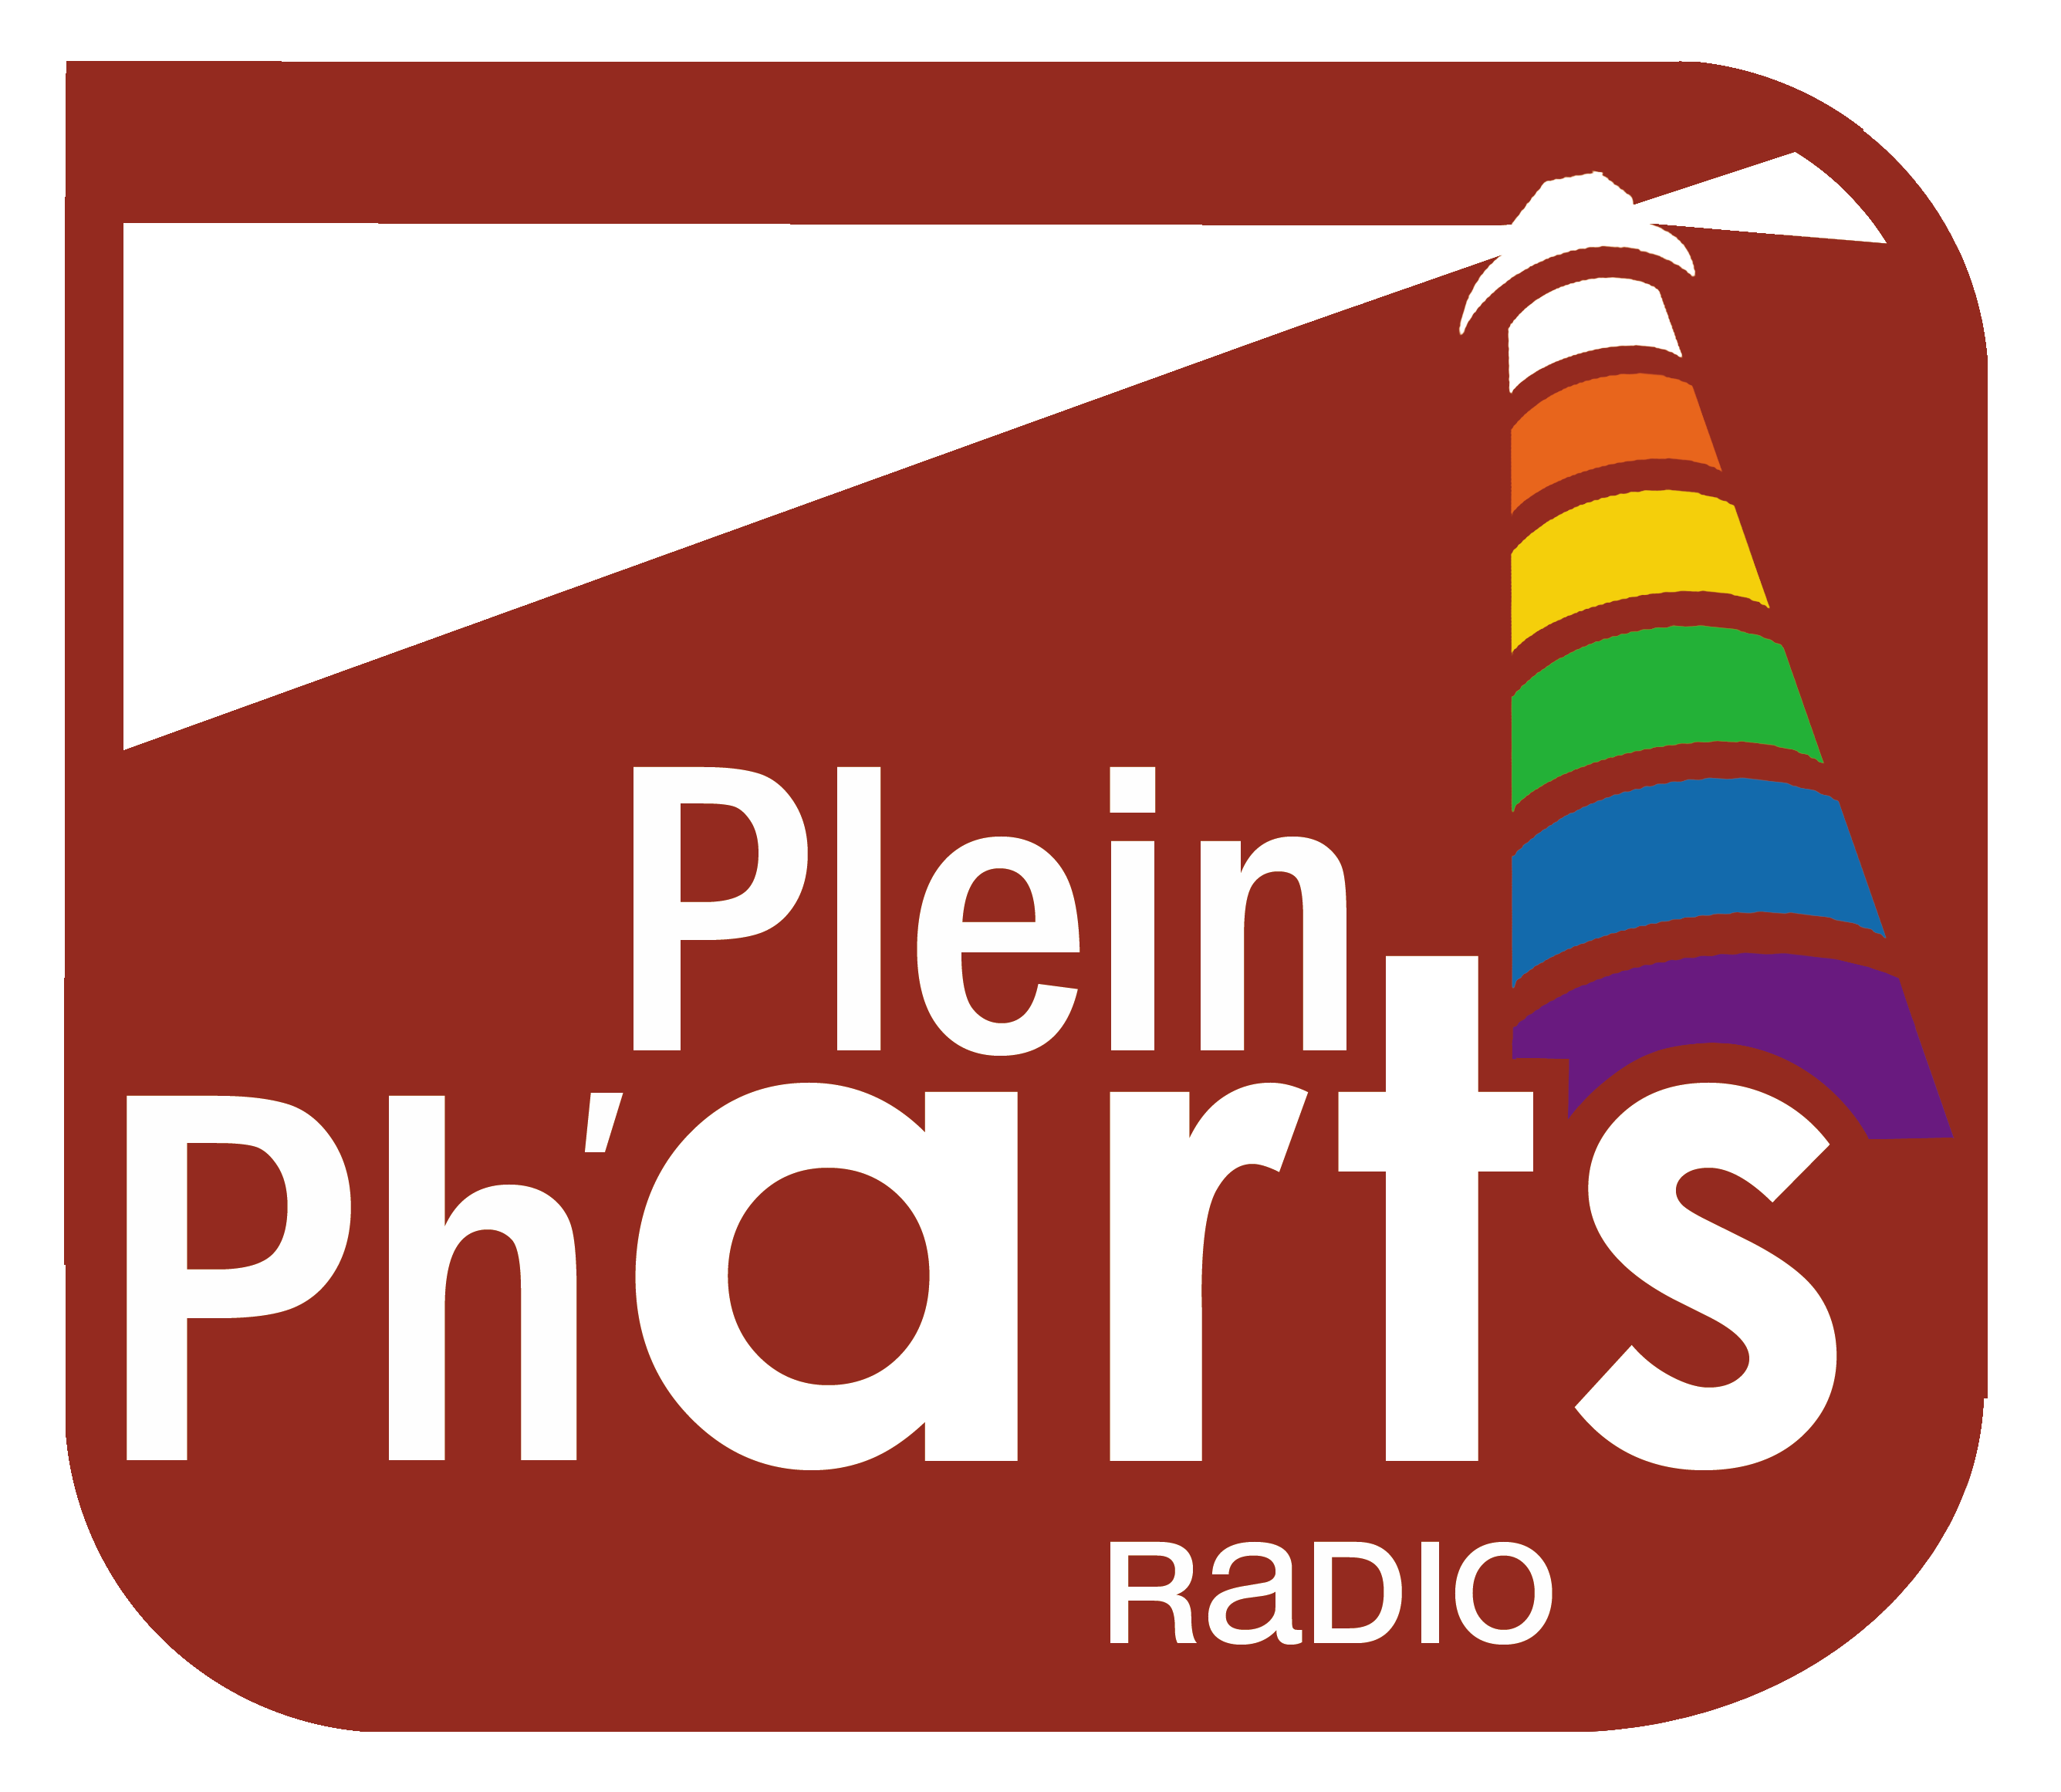 Plein Ph'arts Radio